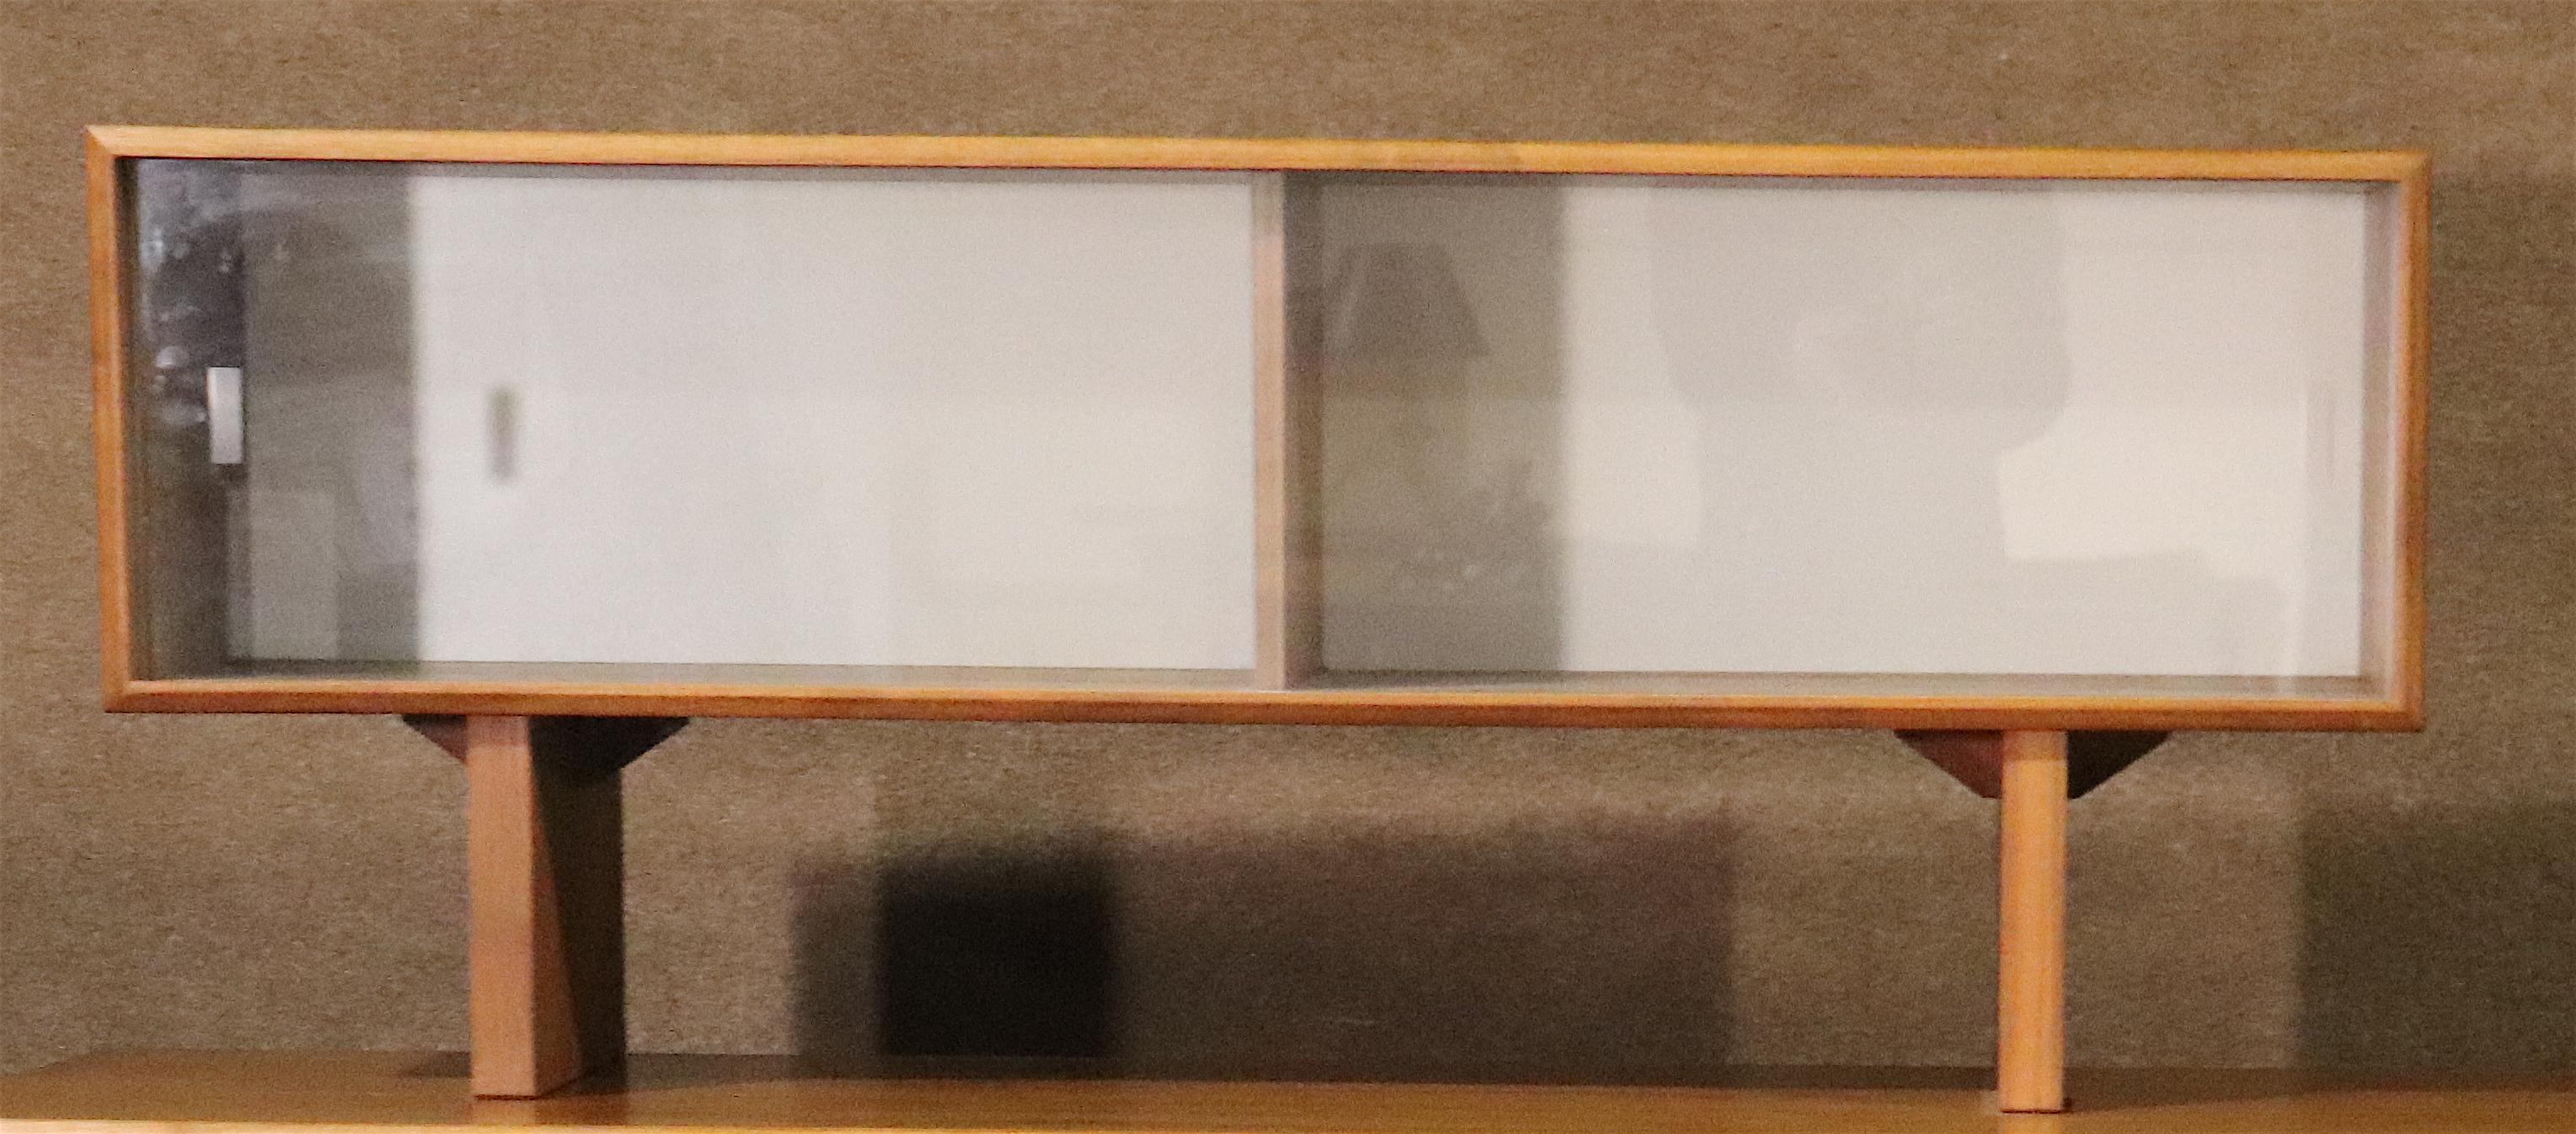 Armoire danoise moderne du milieu du siècle avec portes coulissantes en verre. Bois de teck avec dos blanc. Idéal pour le rangement dans le salon.
Veuillez confirmer le lieu NY ou NJ